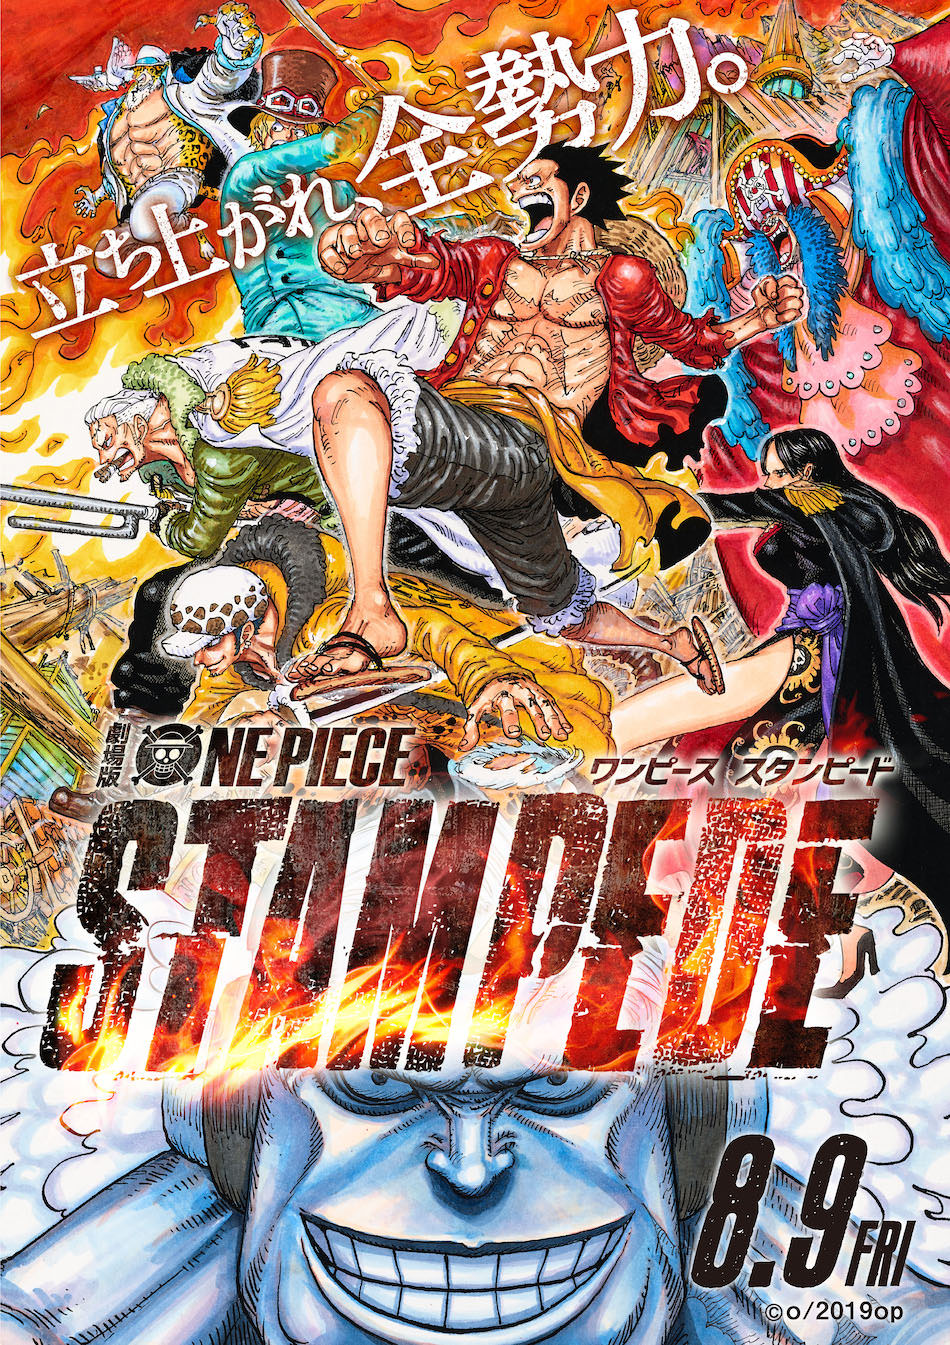 劇場版 One Piece Stampede 特集 3本のインタビューからその魅力に迫る Real Sound リアルサウンド 映画部